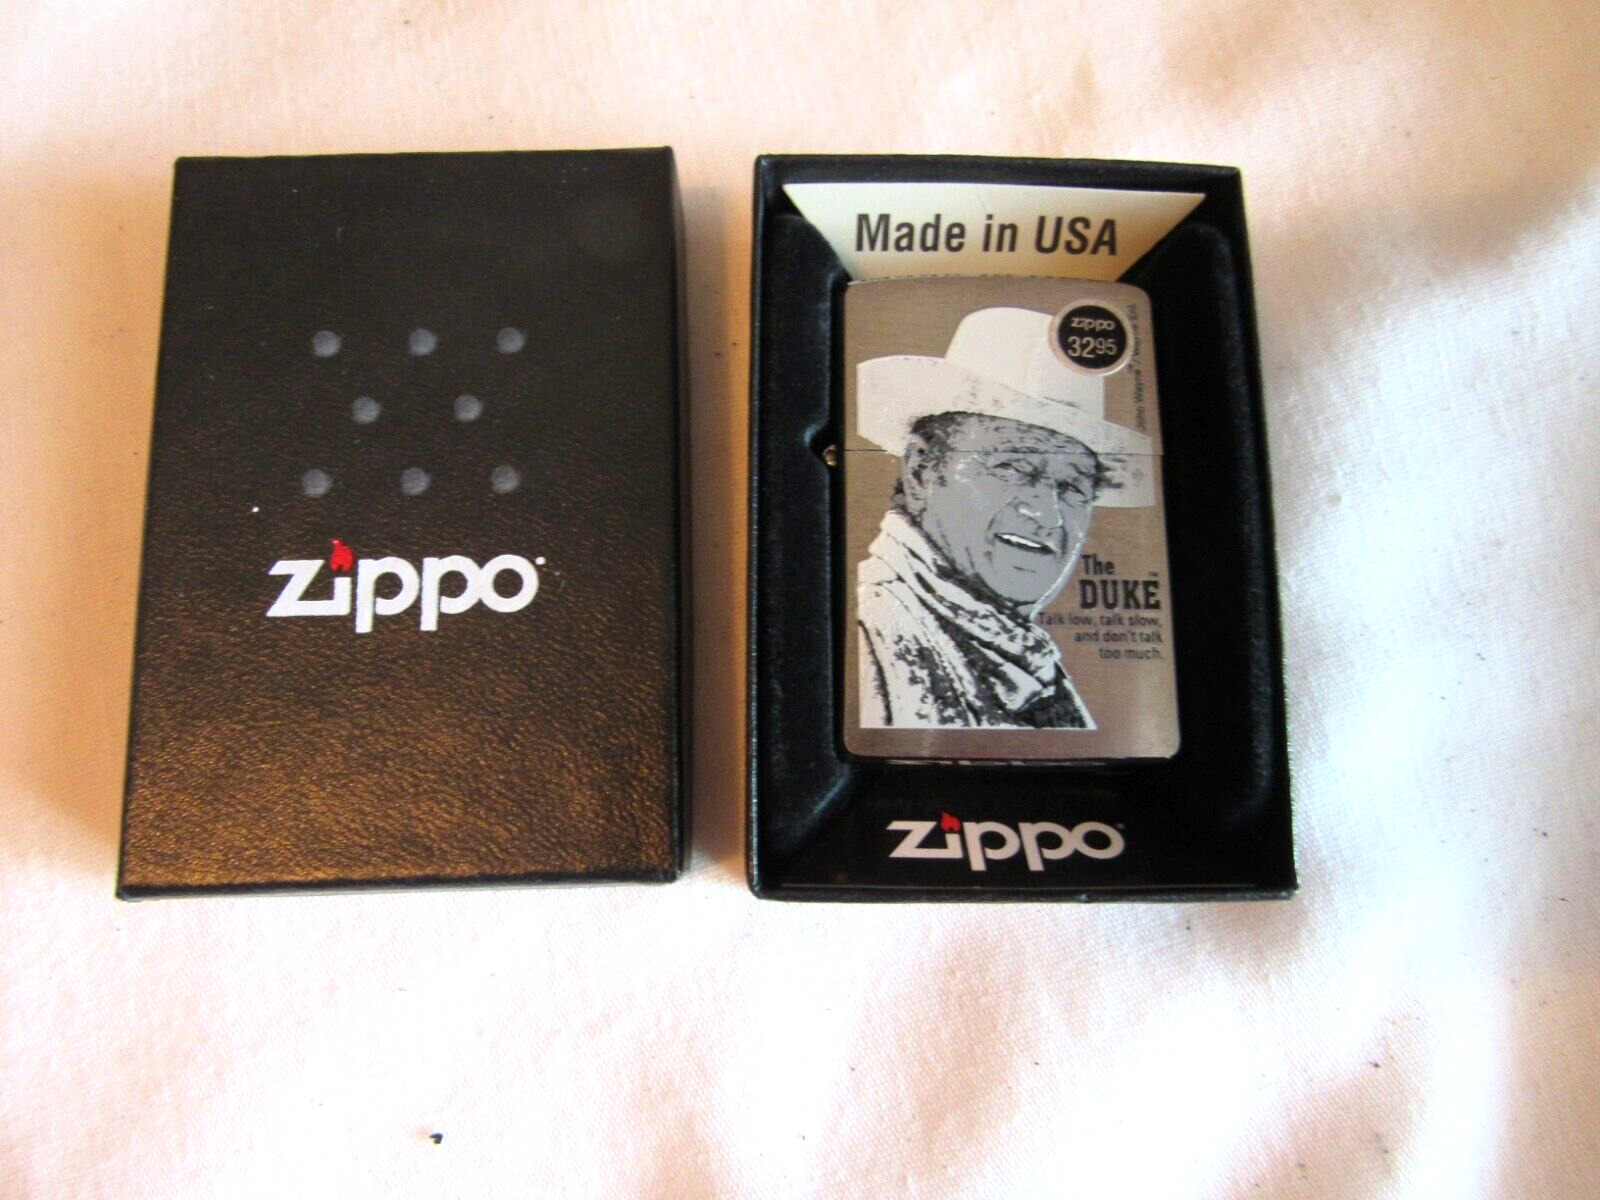 Vintage NOS Zippo Brushed Chrome Cigarette Lighter The Duke Dated B 09